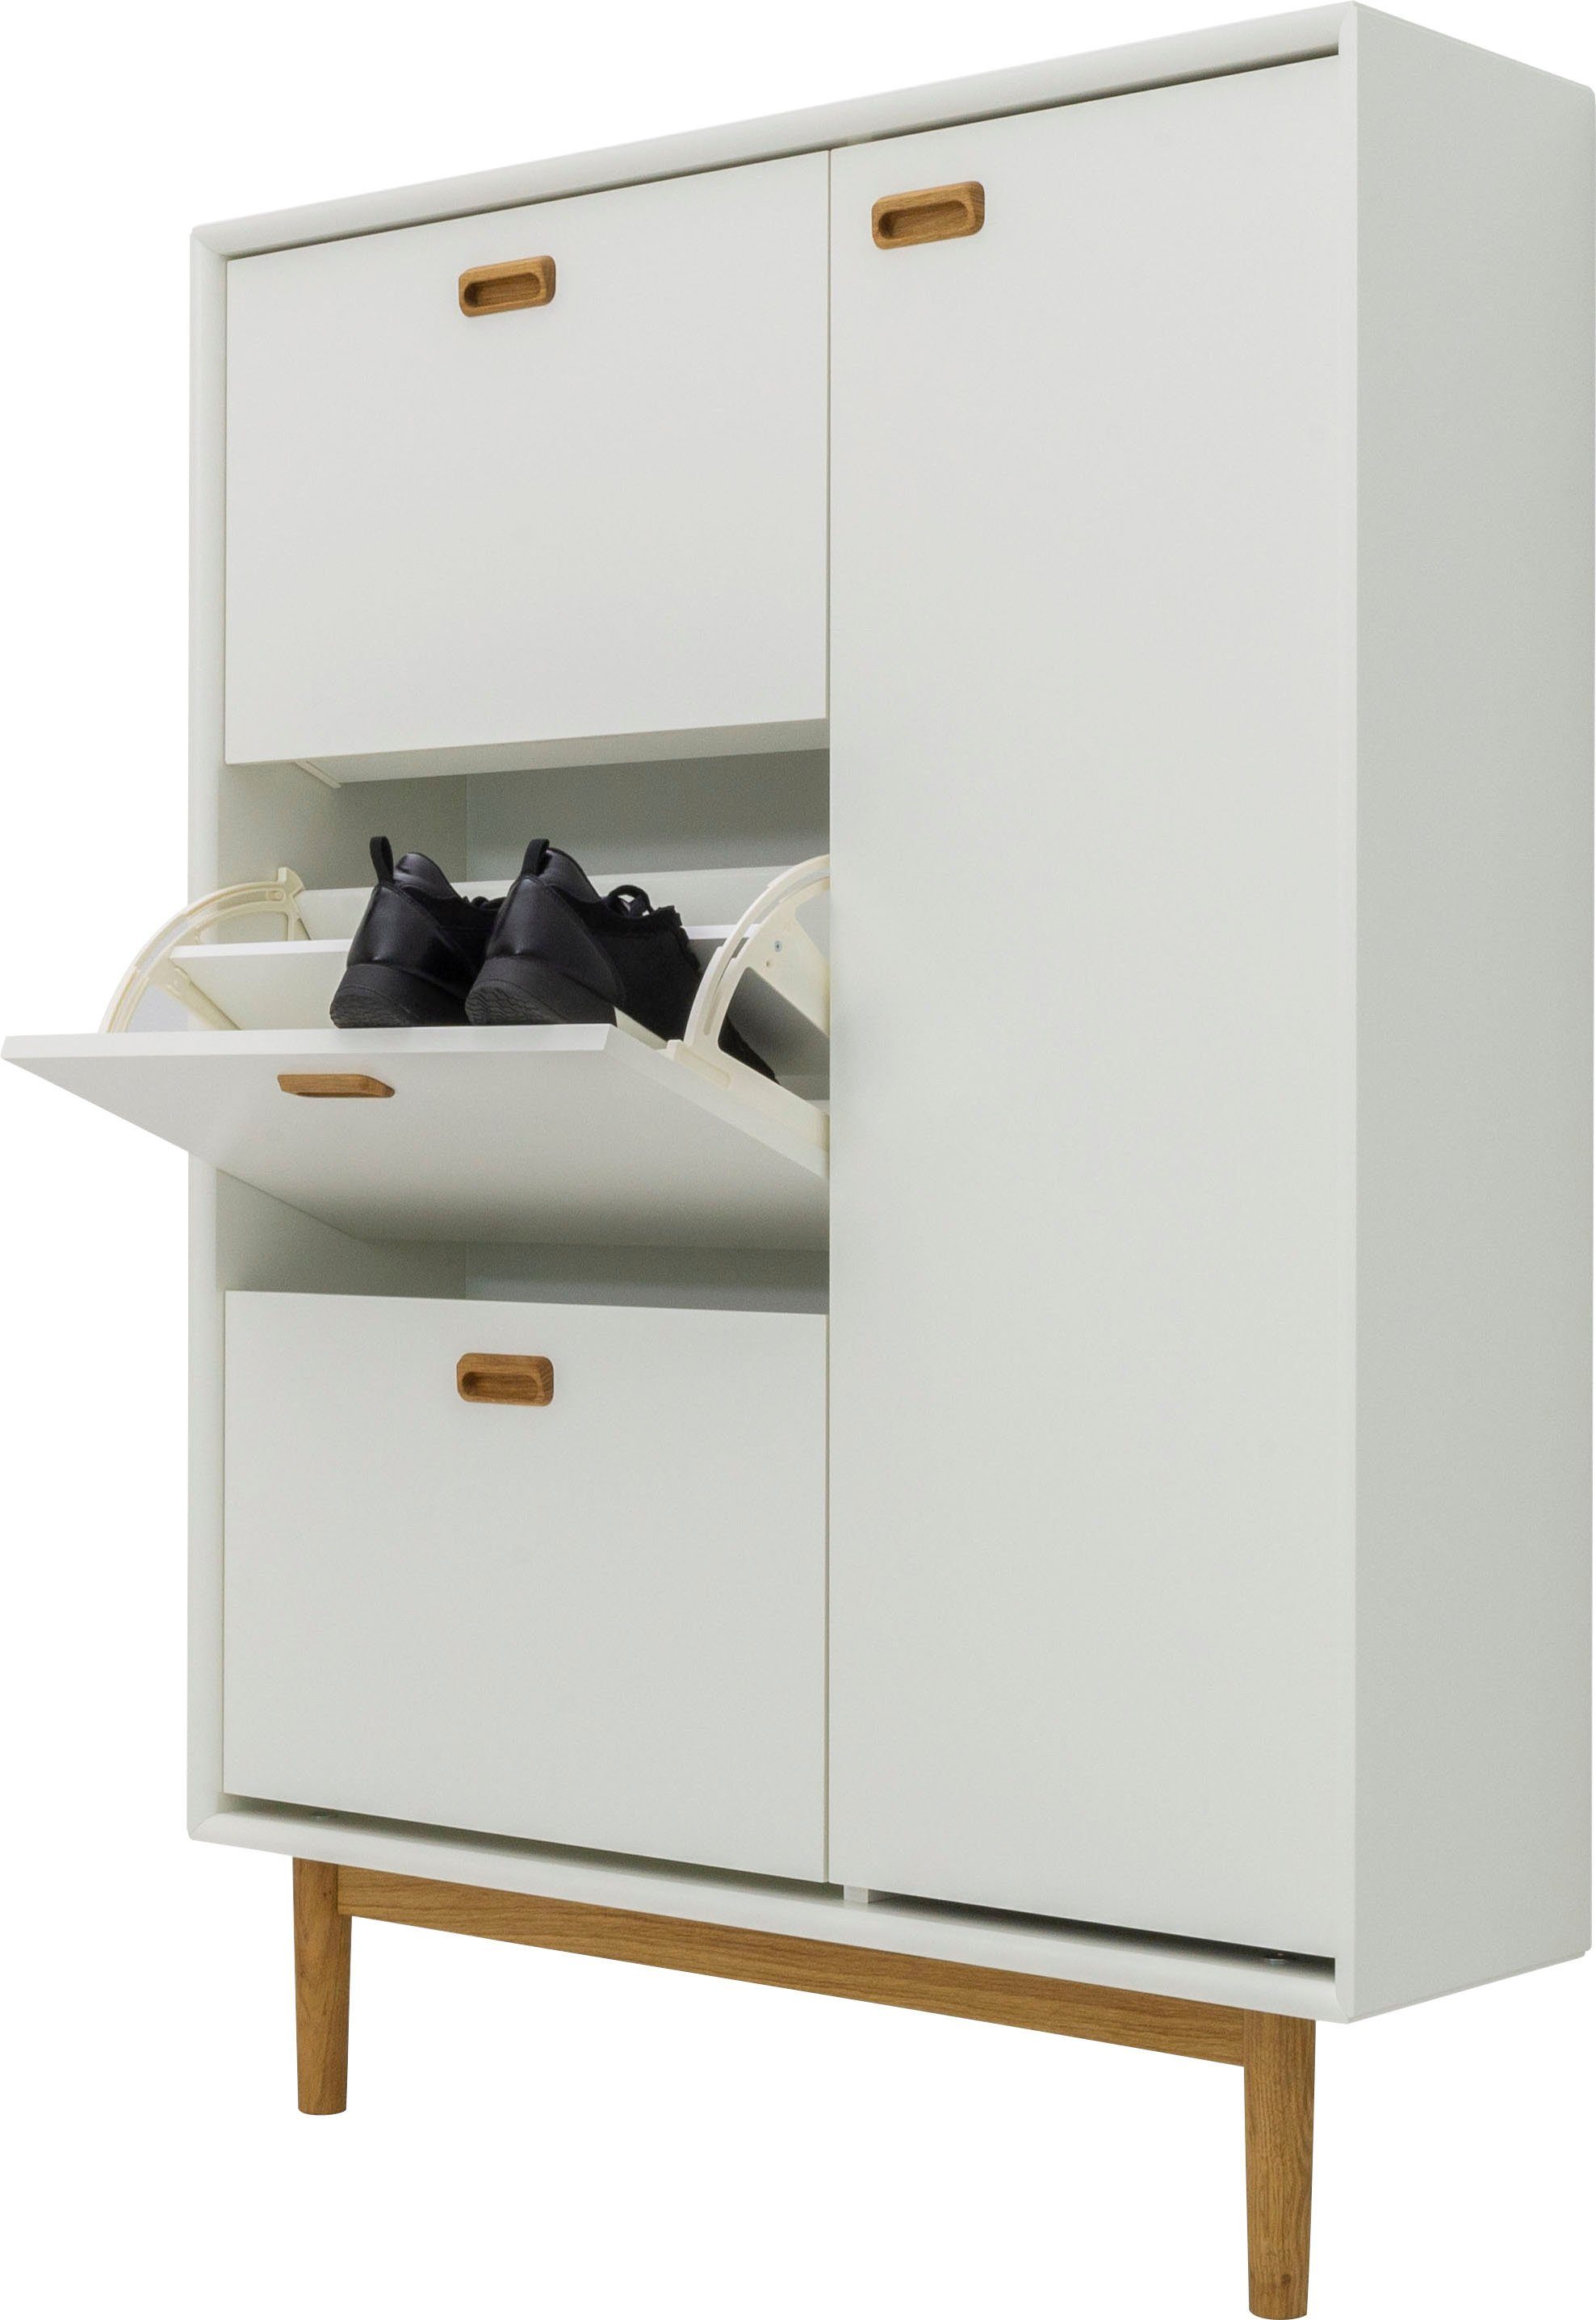 Tenzo Schuhschrank SVEA mit Design white von studio und Tenzo Tür Klappen, Design 1 3